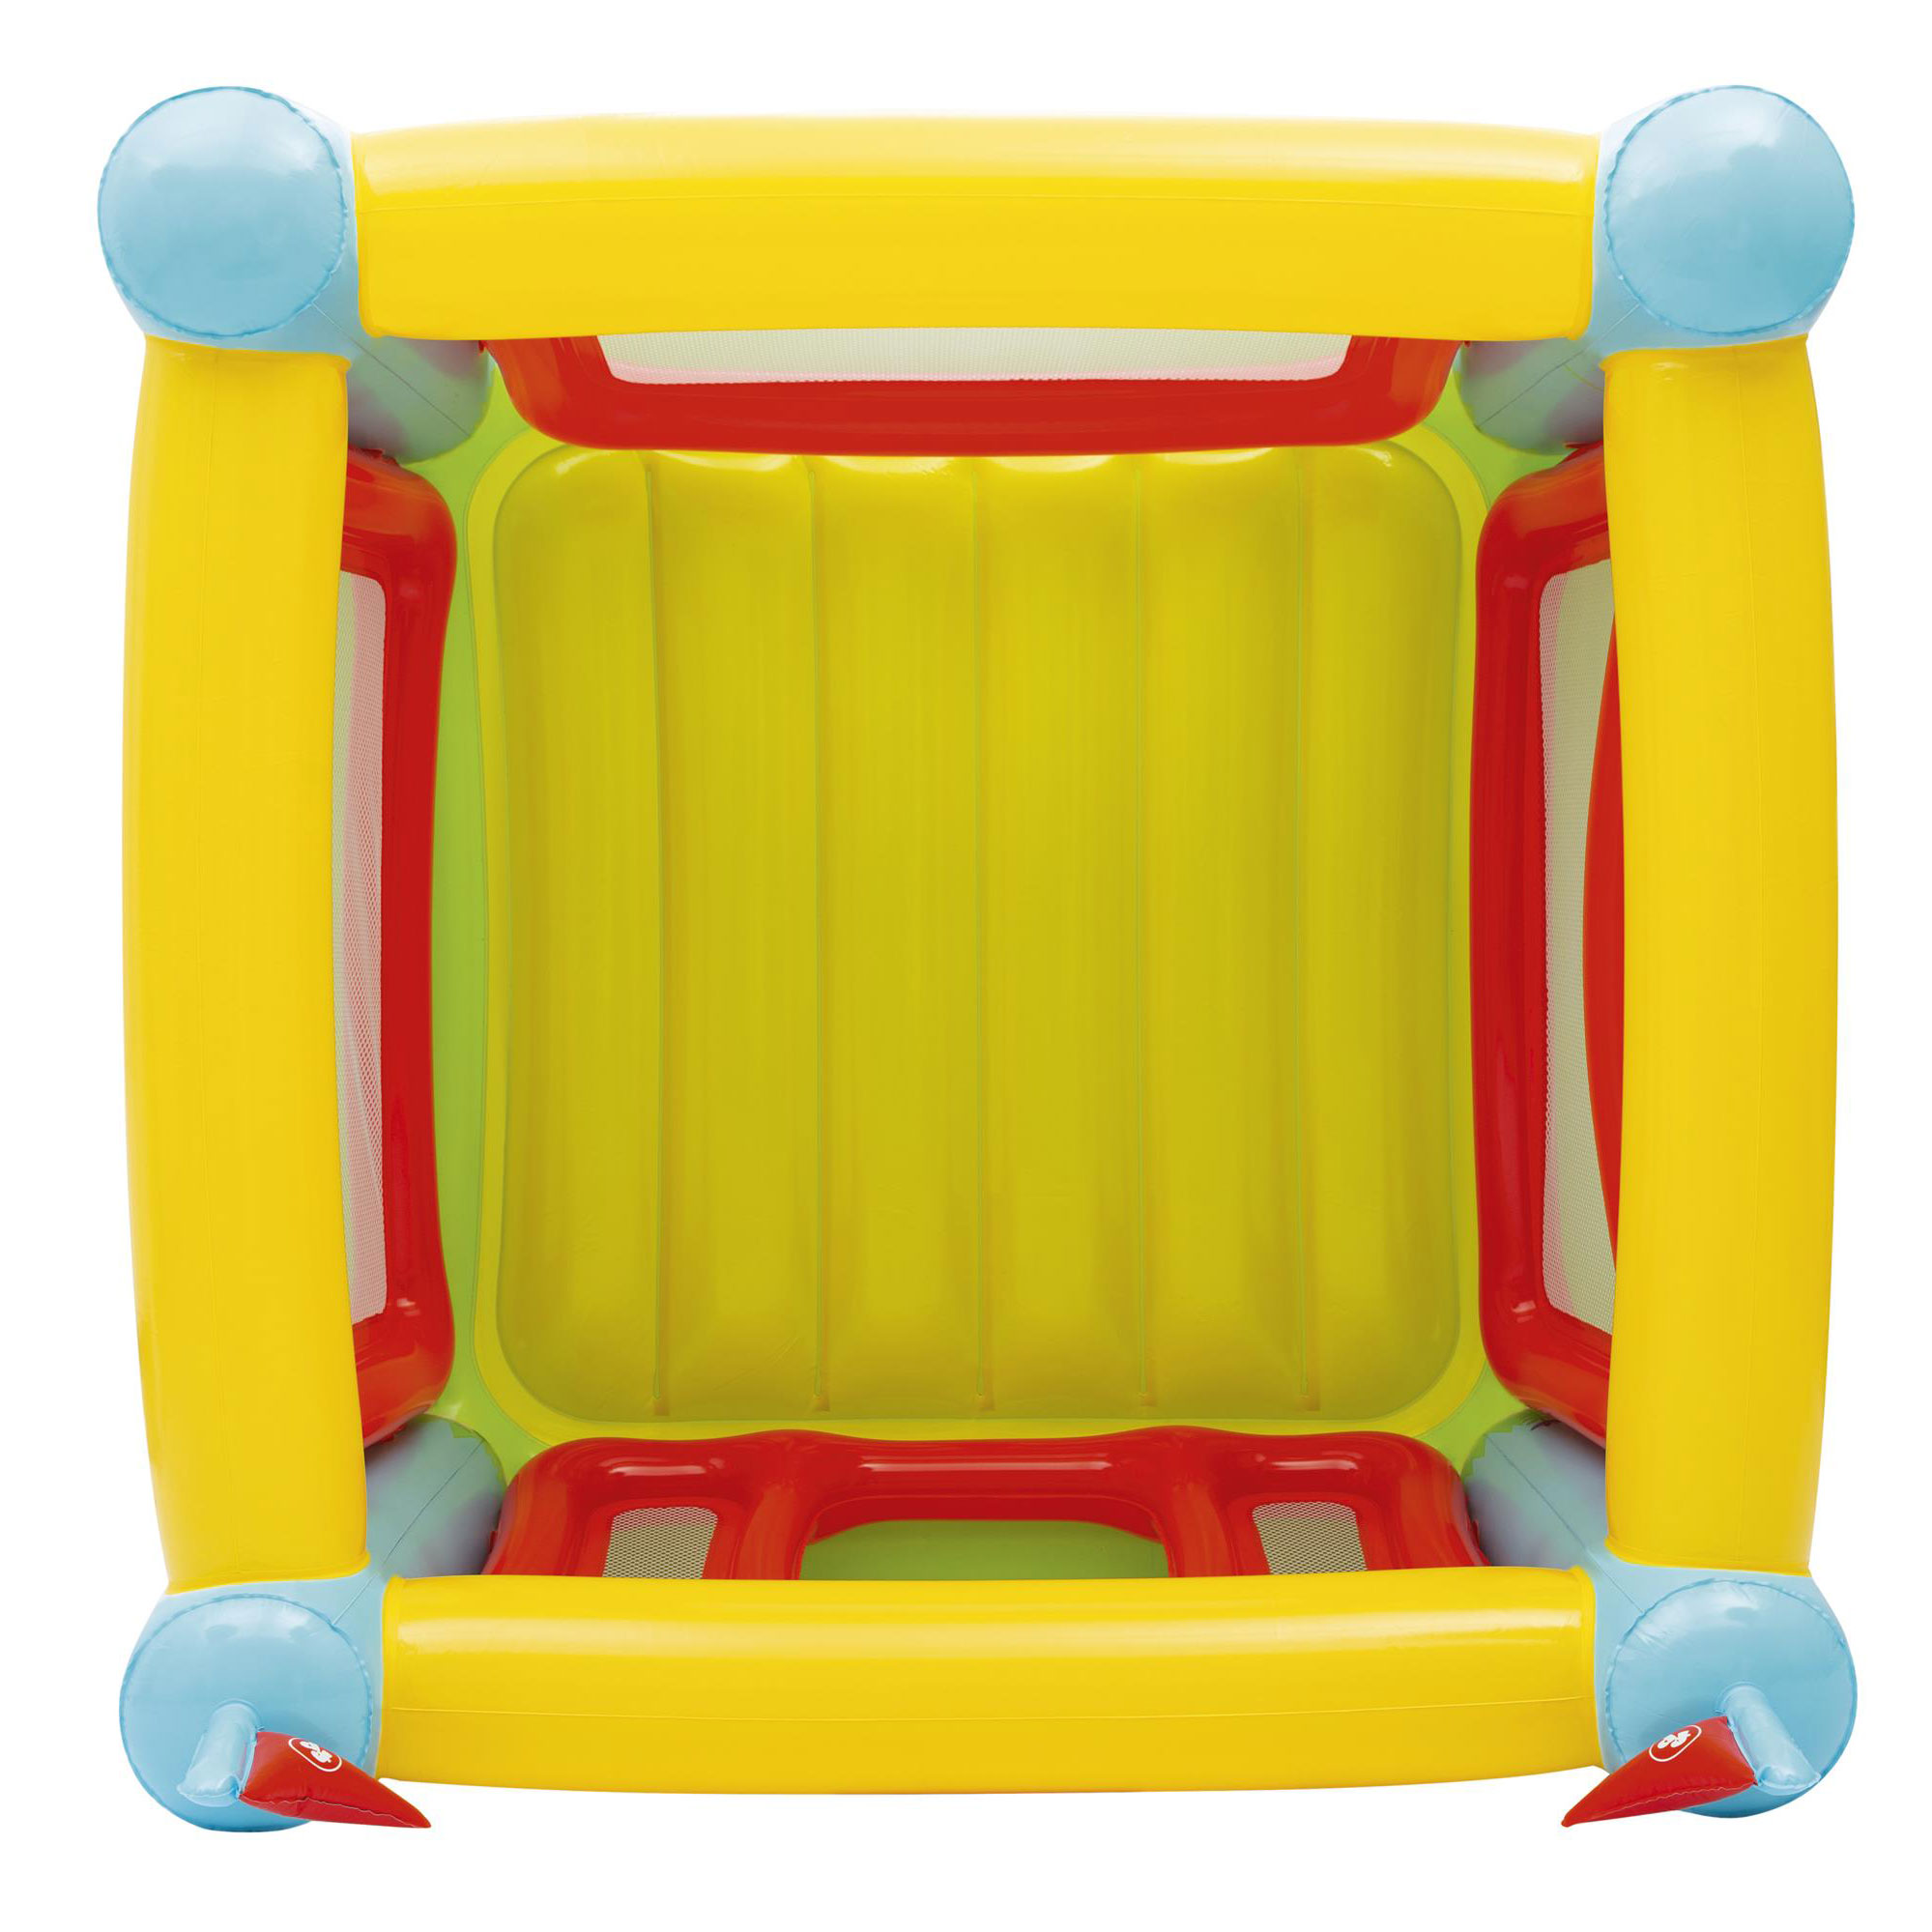 FisherPrice Kids Bouncetastic Bouncer Indoor Inflatable